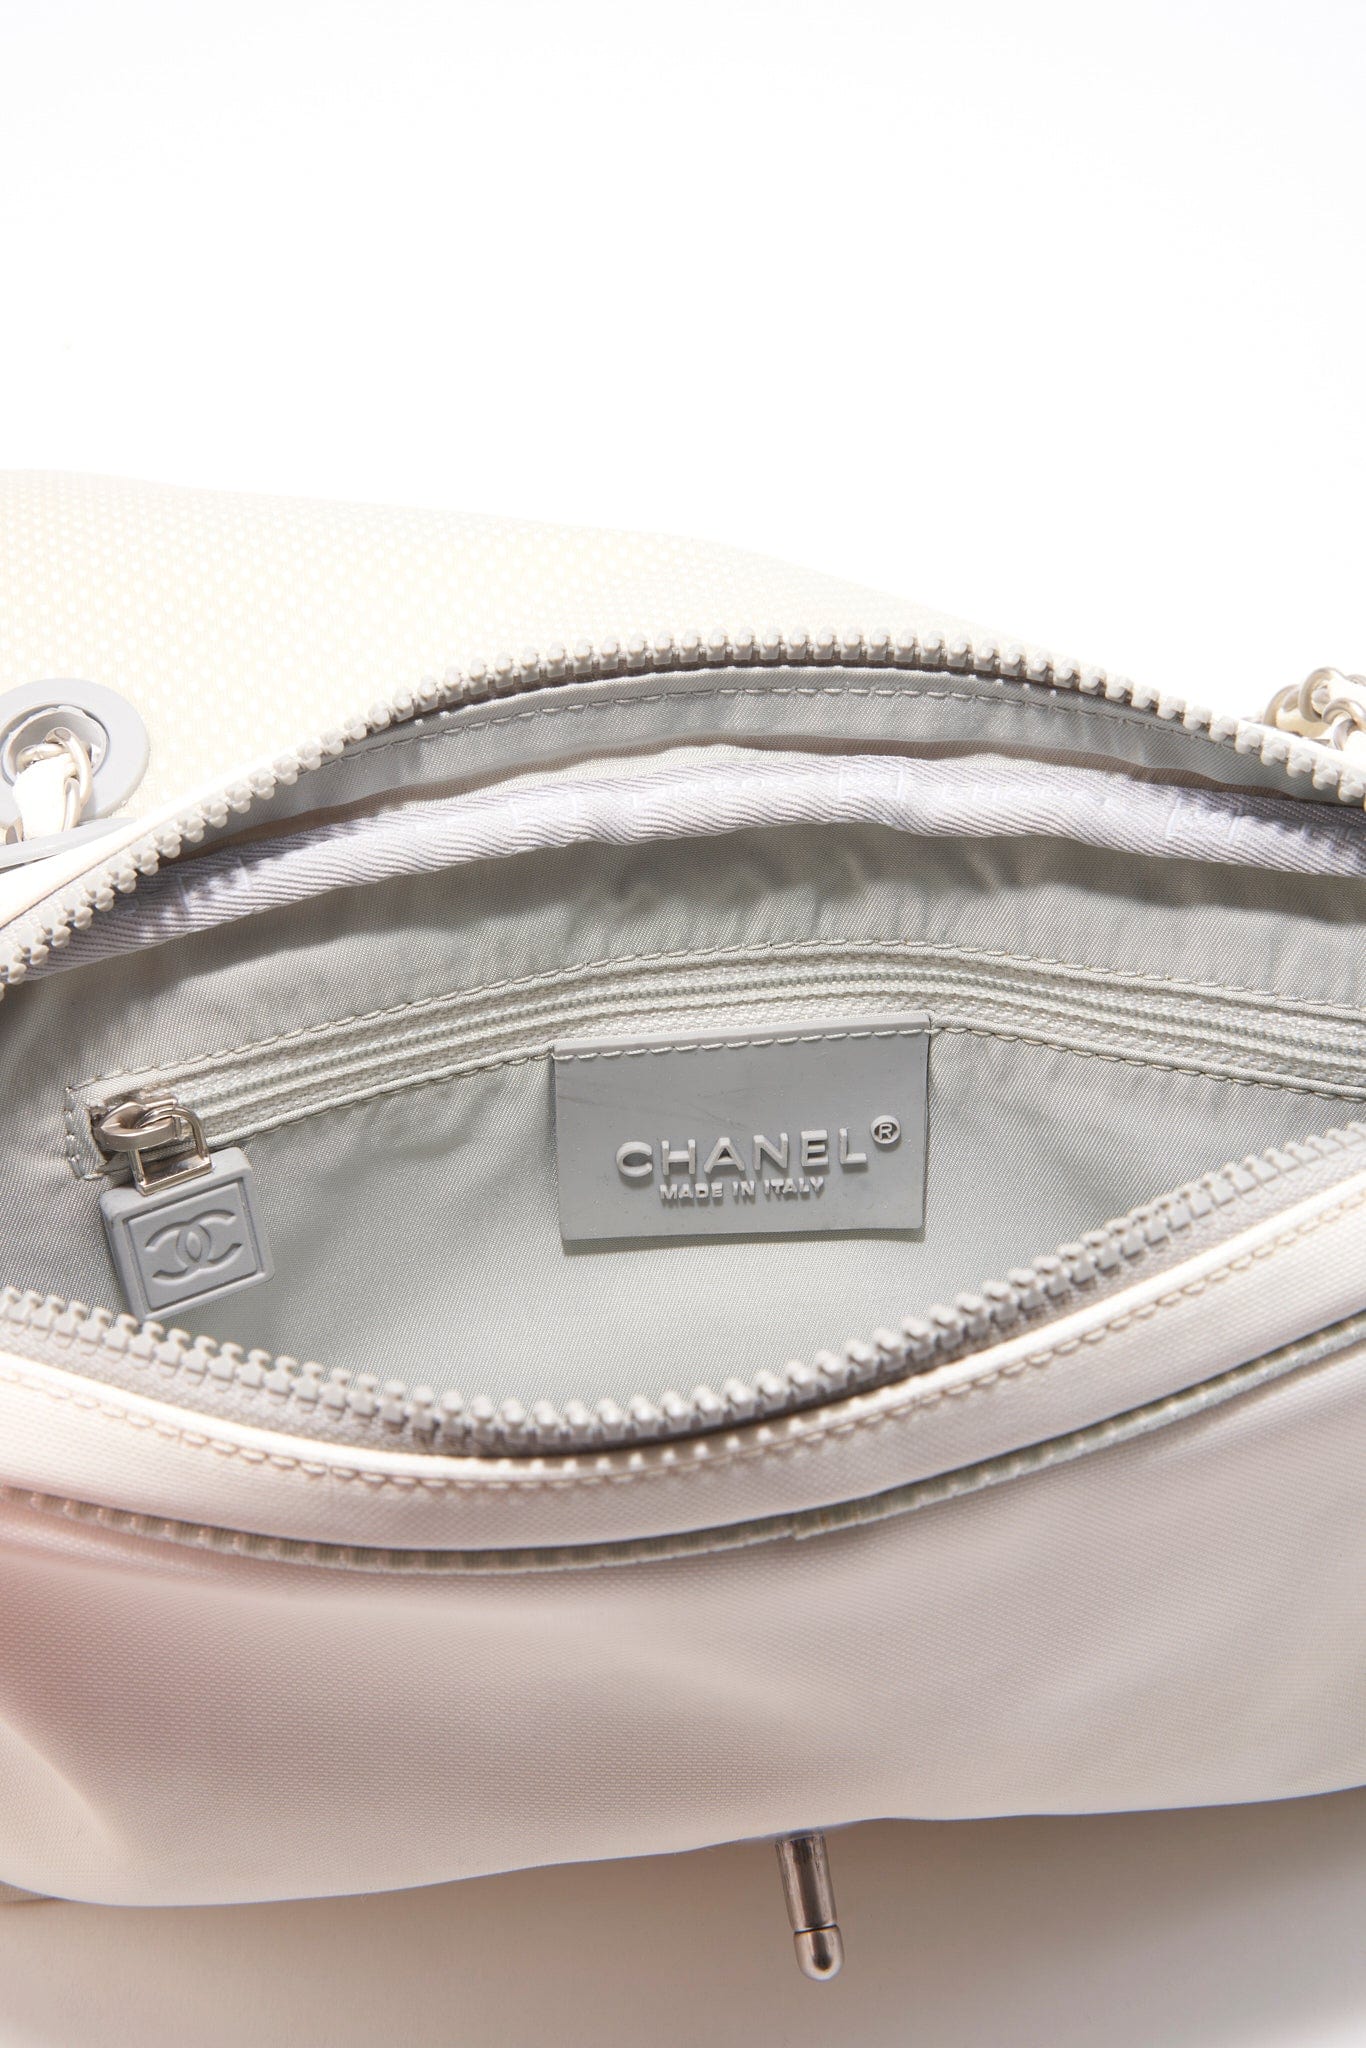 Chanel Sport White Floral Nylon Flap Bag